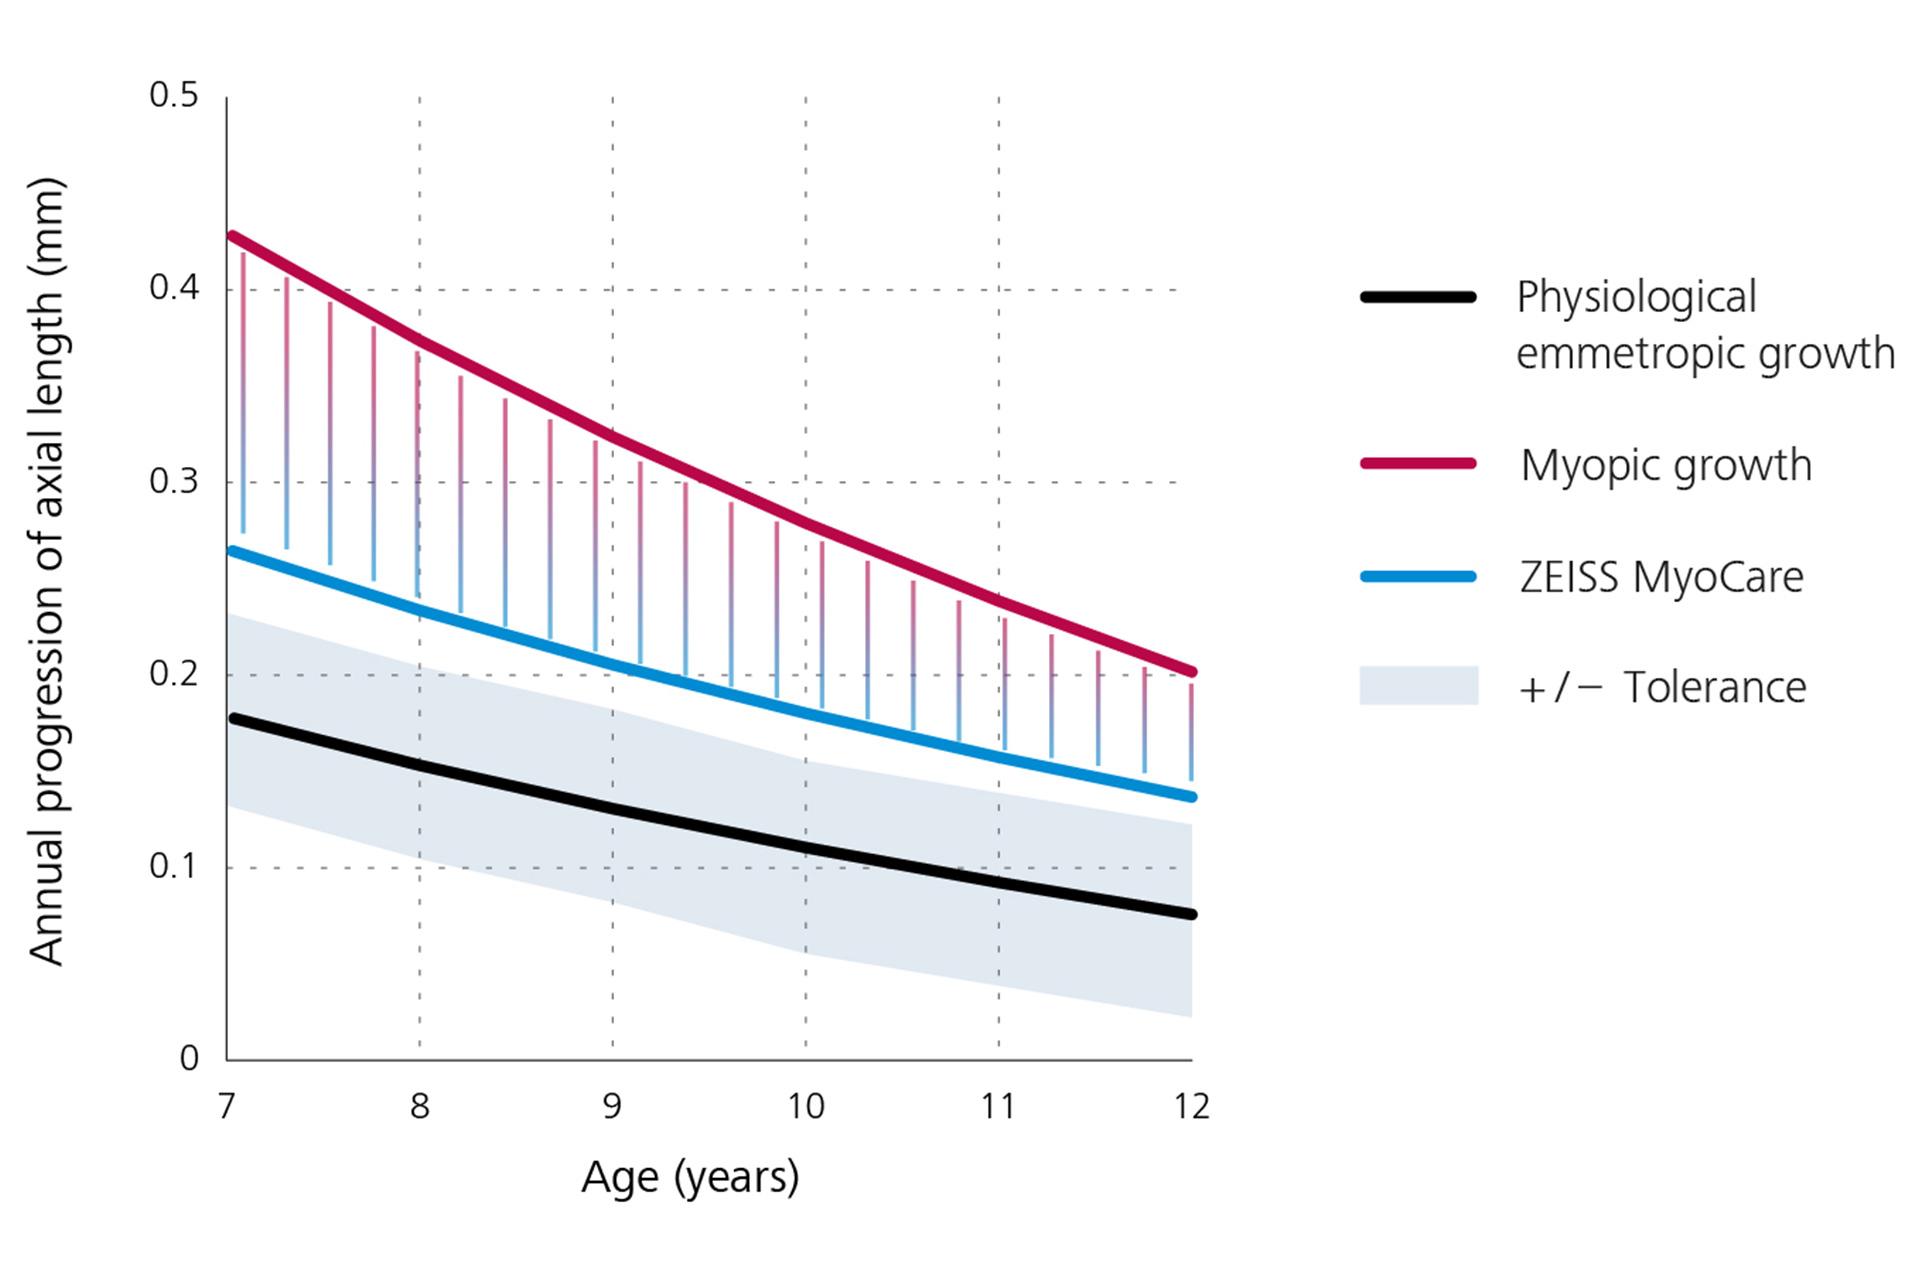 Gráfico lineal que muestra la progresión anual de la longitud axial con el crecimiento emétrope fisiológico en negro en la parte inferior, el crecimiento miope en rojo en la parte superior y los resultados de las lentes ZEISS MyoCare en azul en el centro. De este gráfico, se deduce que la progresión de la miopía está por debajo de la curva de crecimiento de la miopía si se utilizan lentes ZEISS MyoCare.  